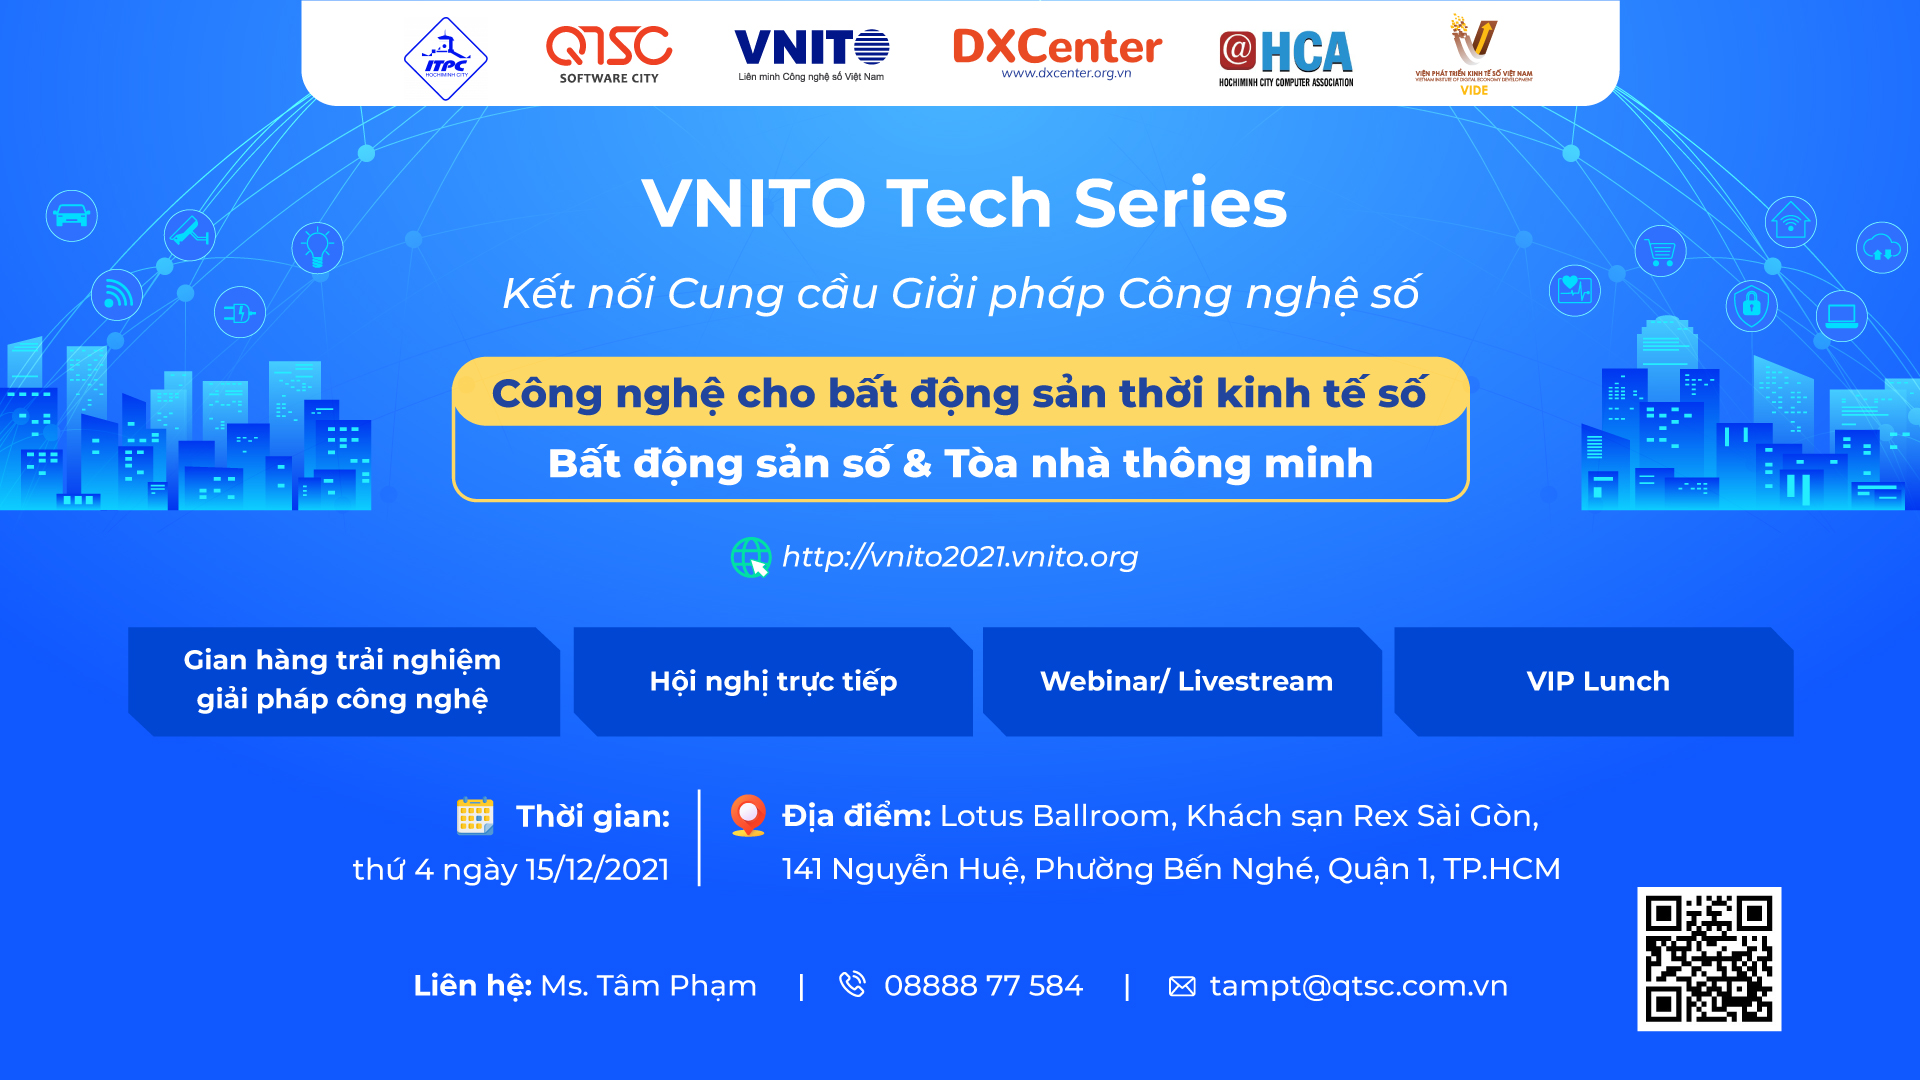 Chuỗi Hội thảo Công nghệ số (VNITO Tech Series) 2021: “Công nghệ cho bất động sản thời kinh tế số”